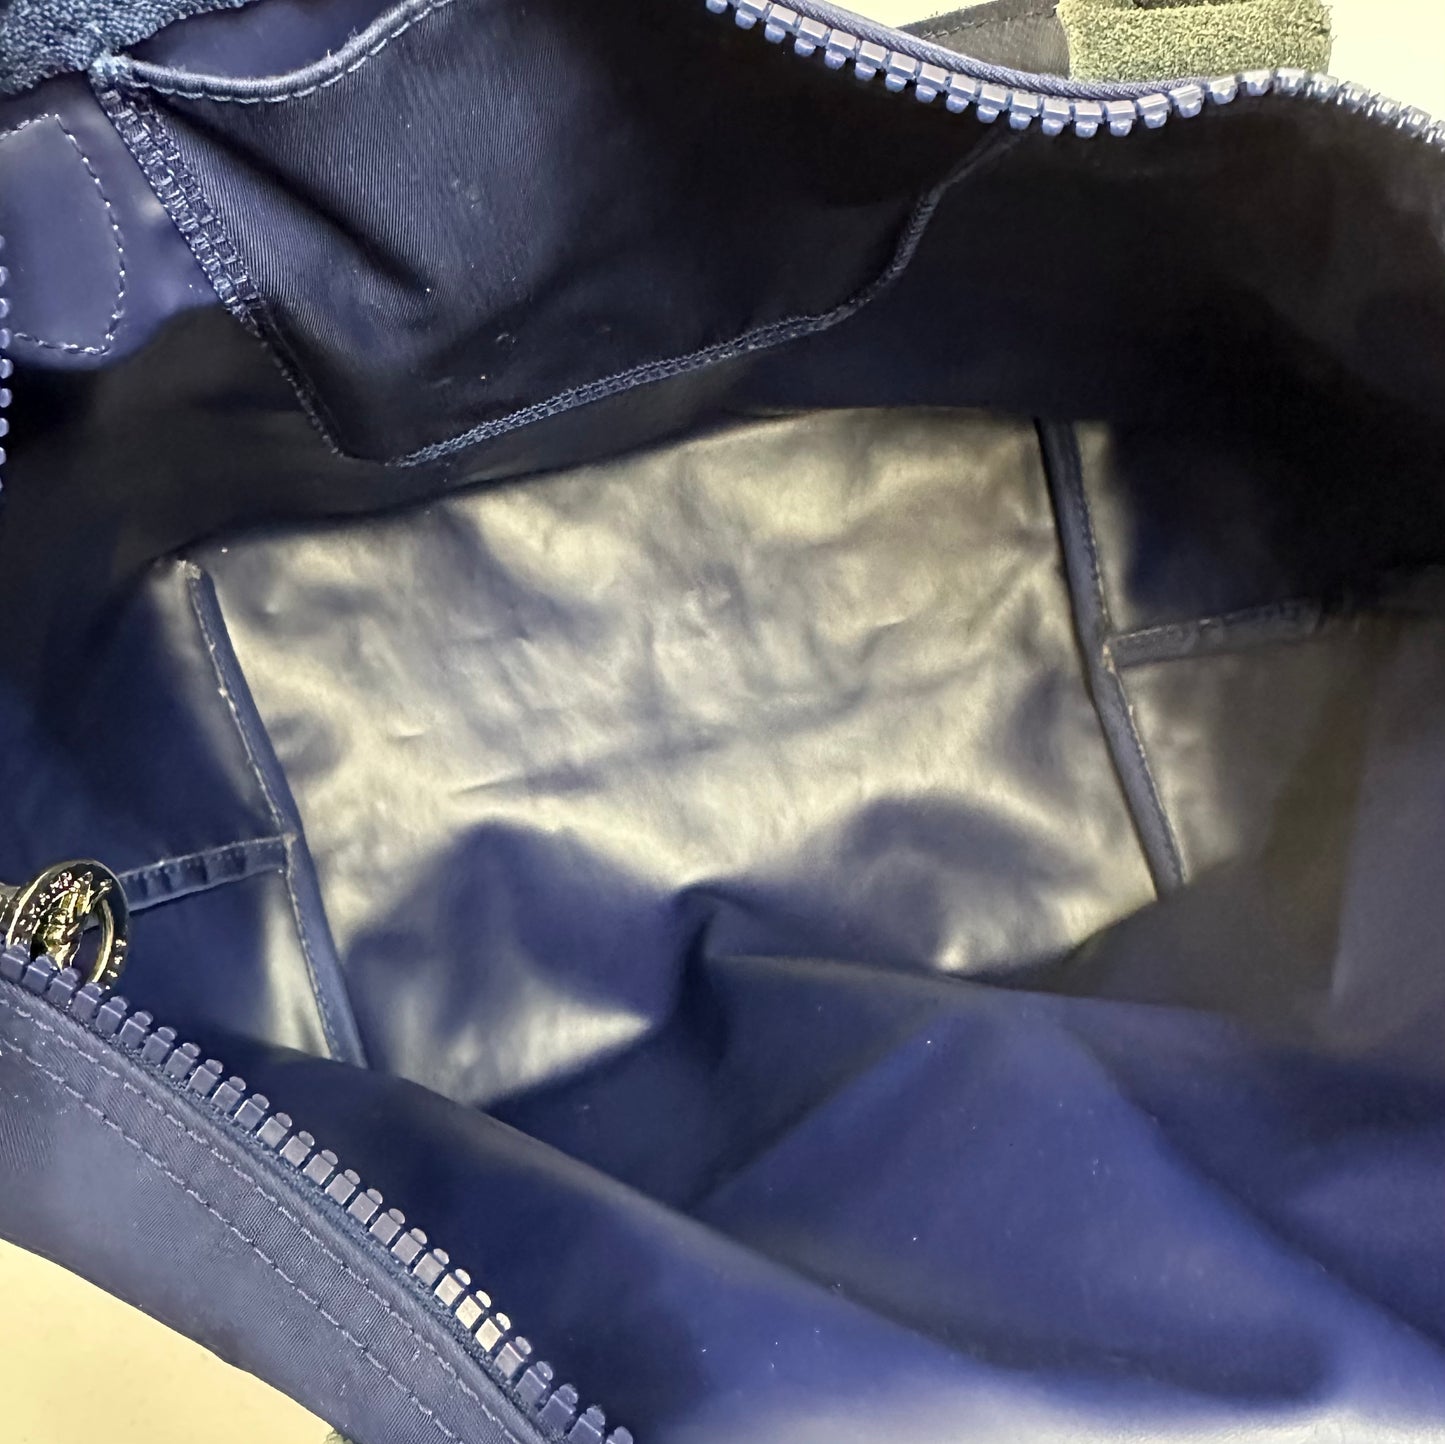 Longchamp Model Depose Navy Blue Tote Bag